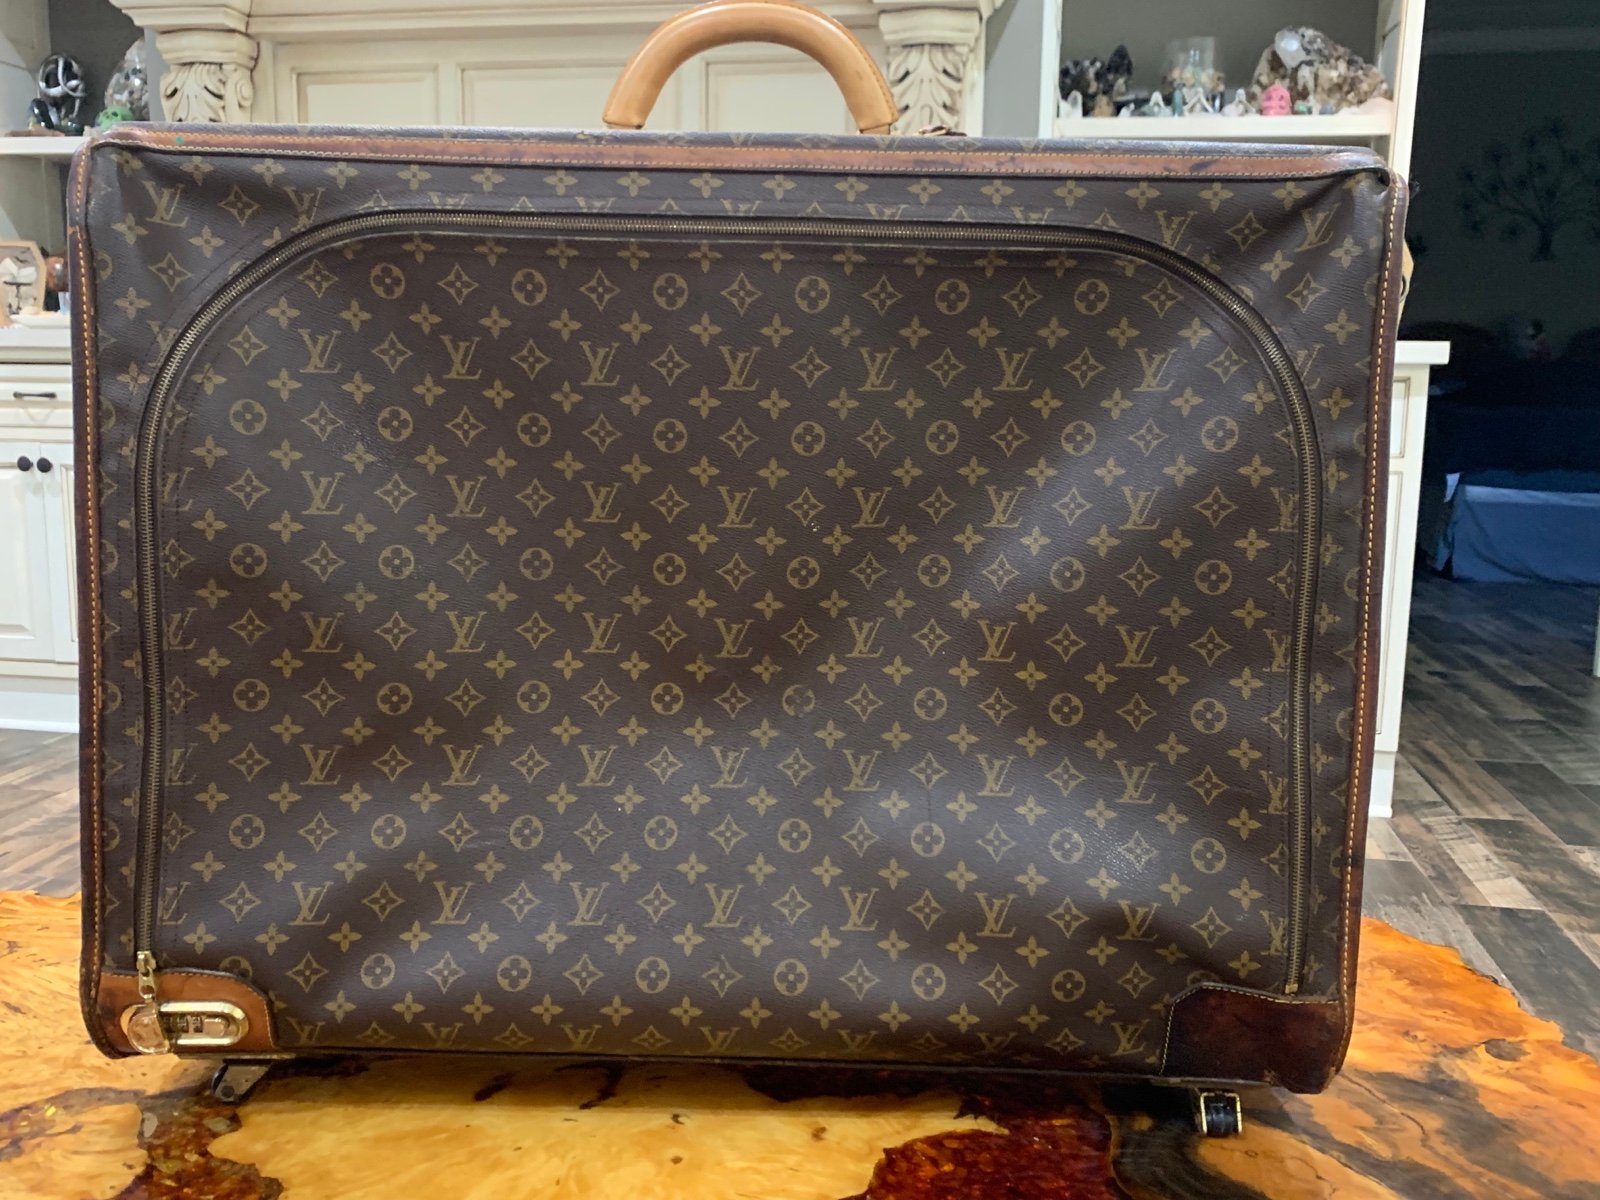 Vintage Louis Vuitton suitcase D8N8K1Q3J